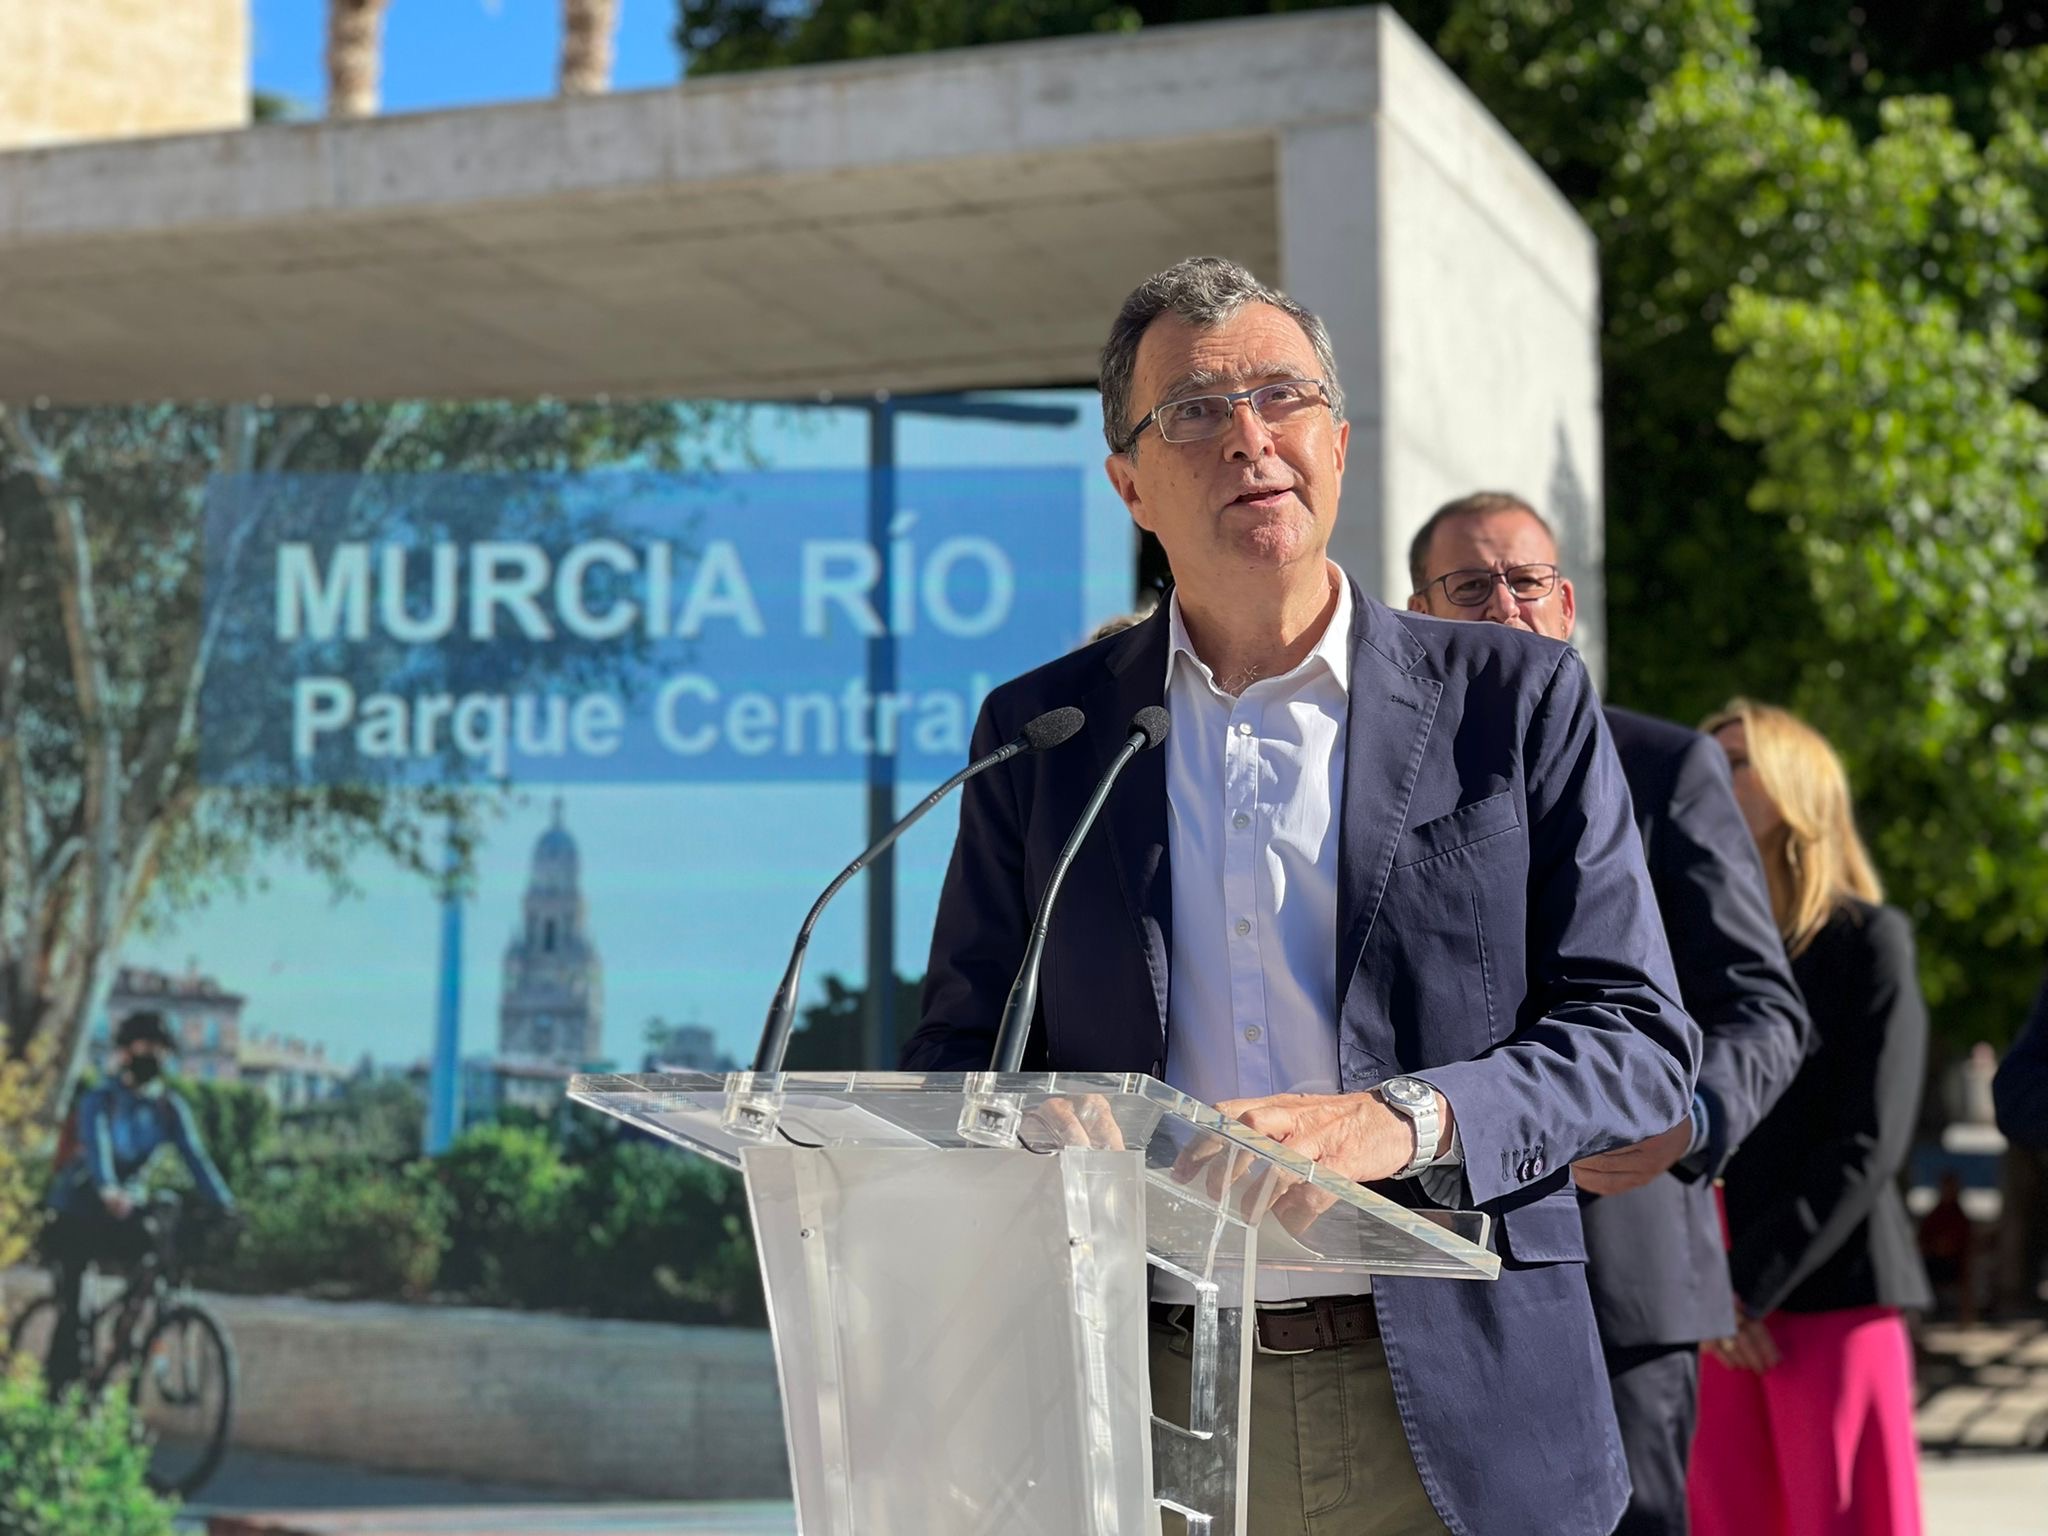 El nuevo ‘Murcia Río’ conectará el Segura con todo el municipio a través de un gran bosque de ribera